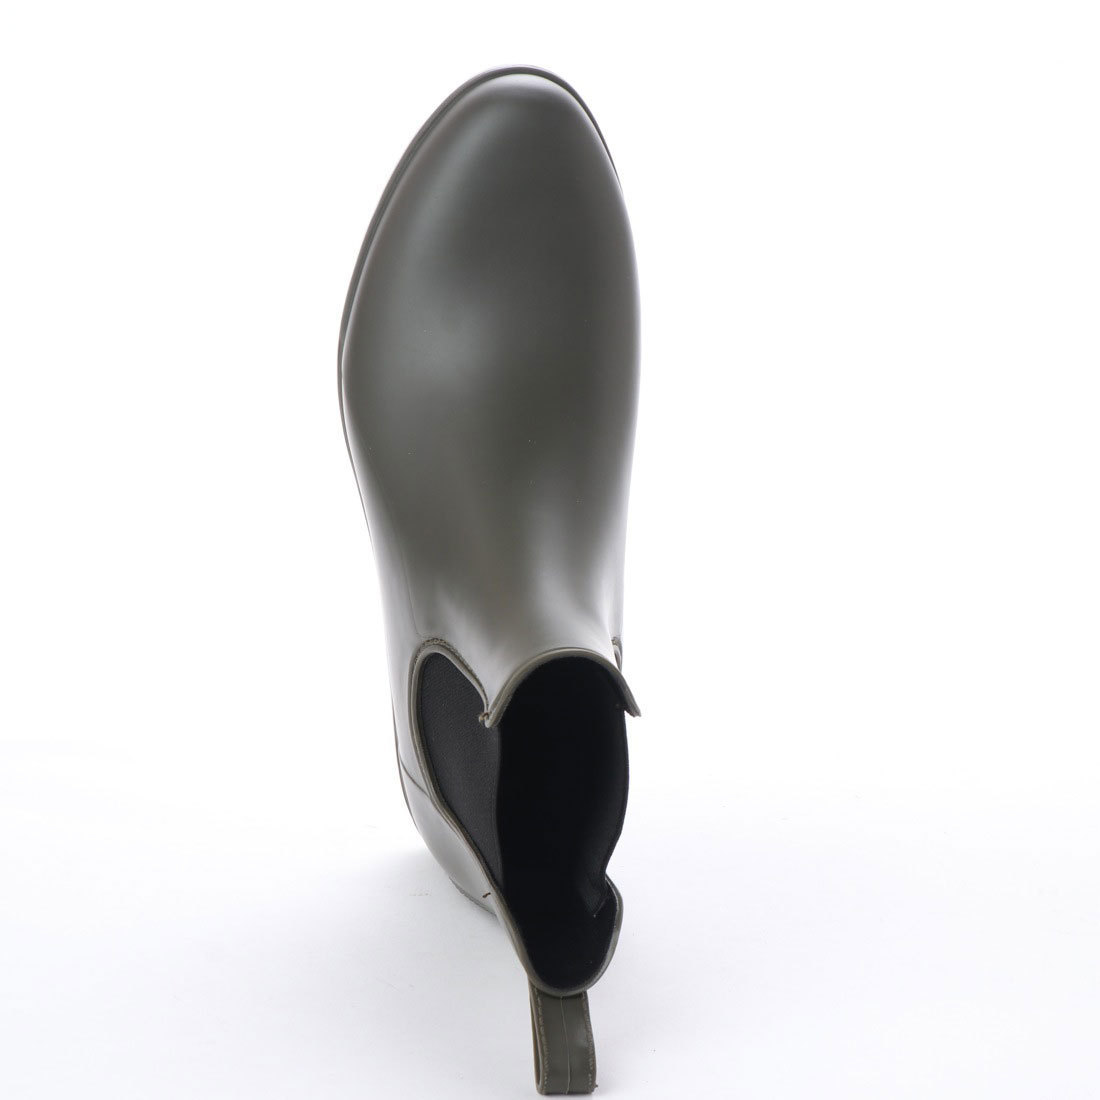  lady's rain boots side-gore boots new goods [18033-KHA-M]23.0cm~23.5cm Short rain shoes short boots 